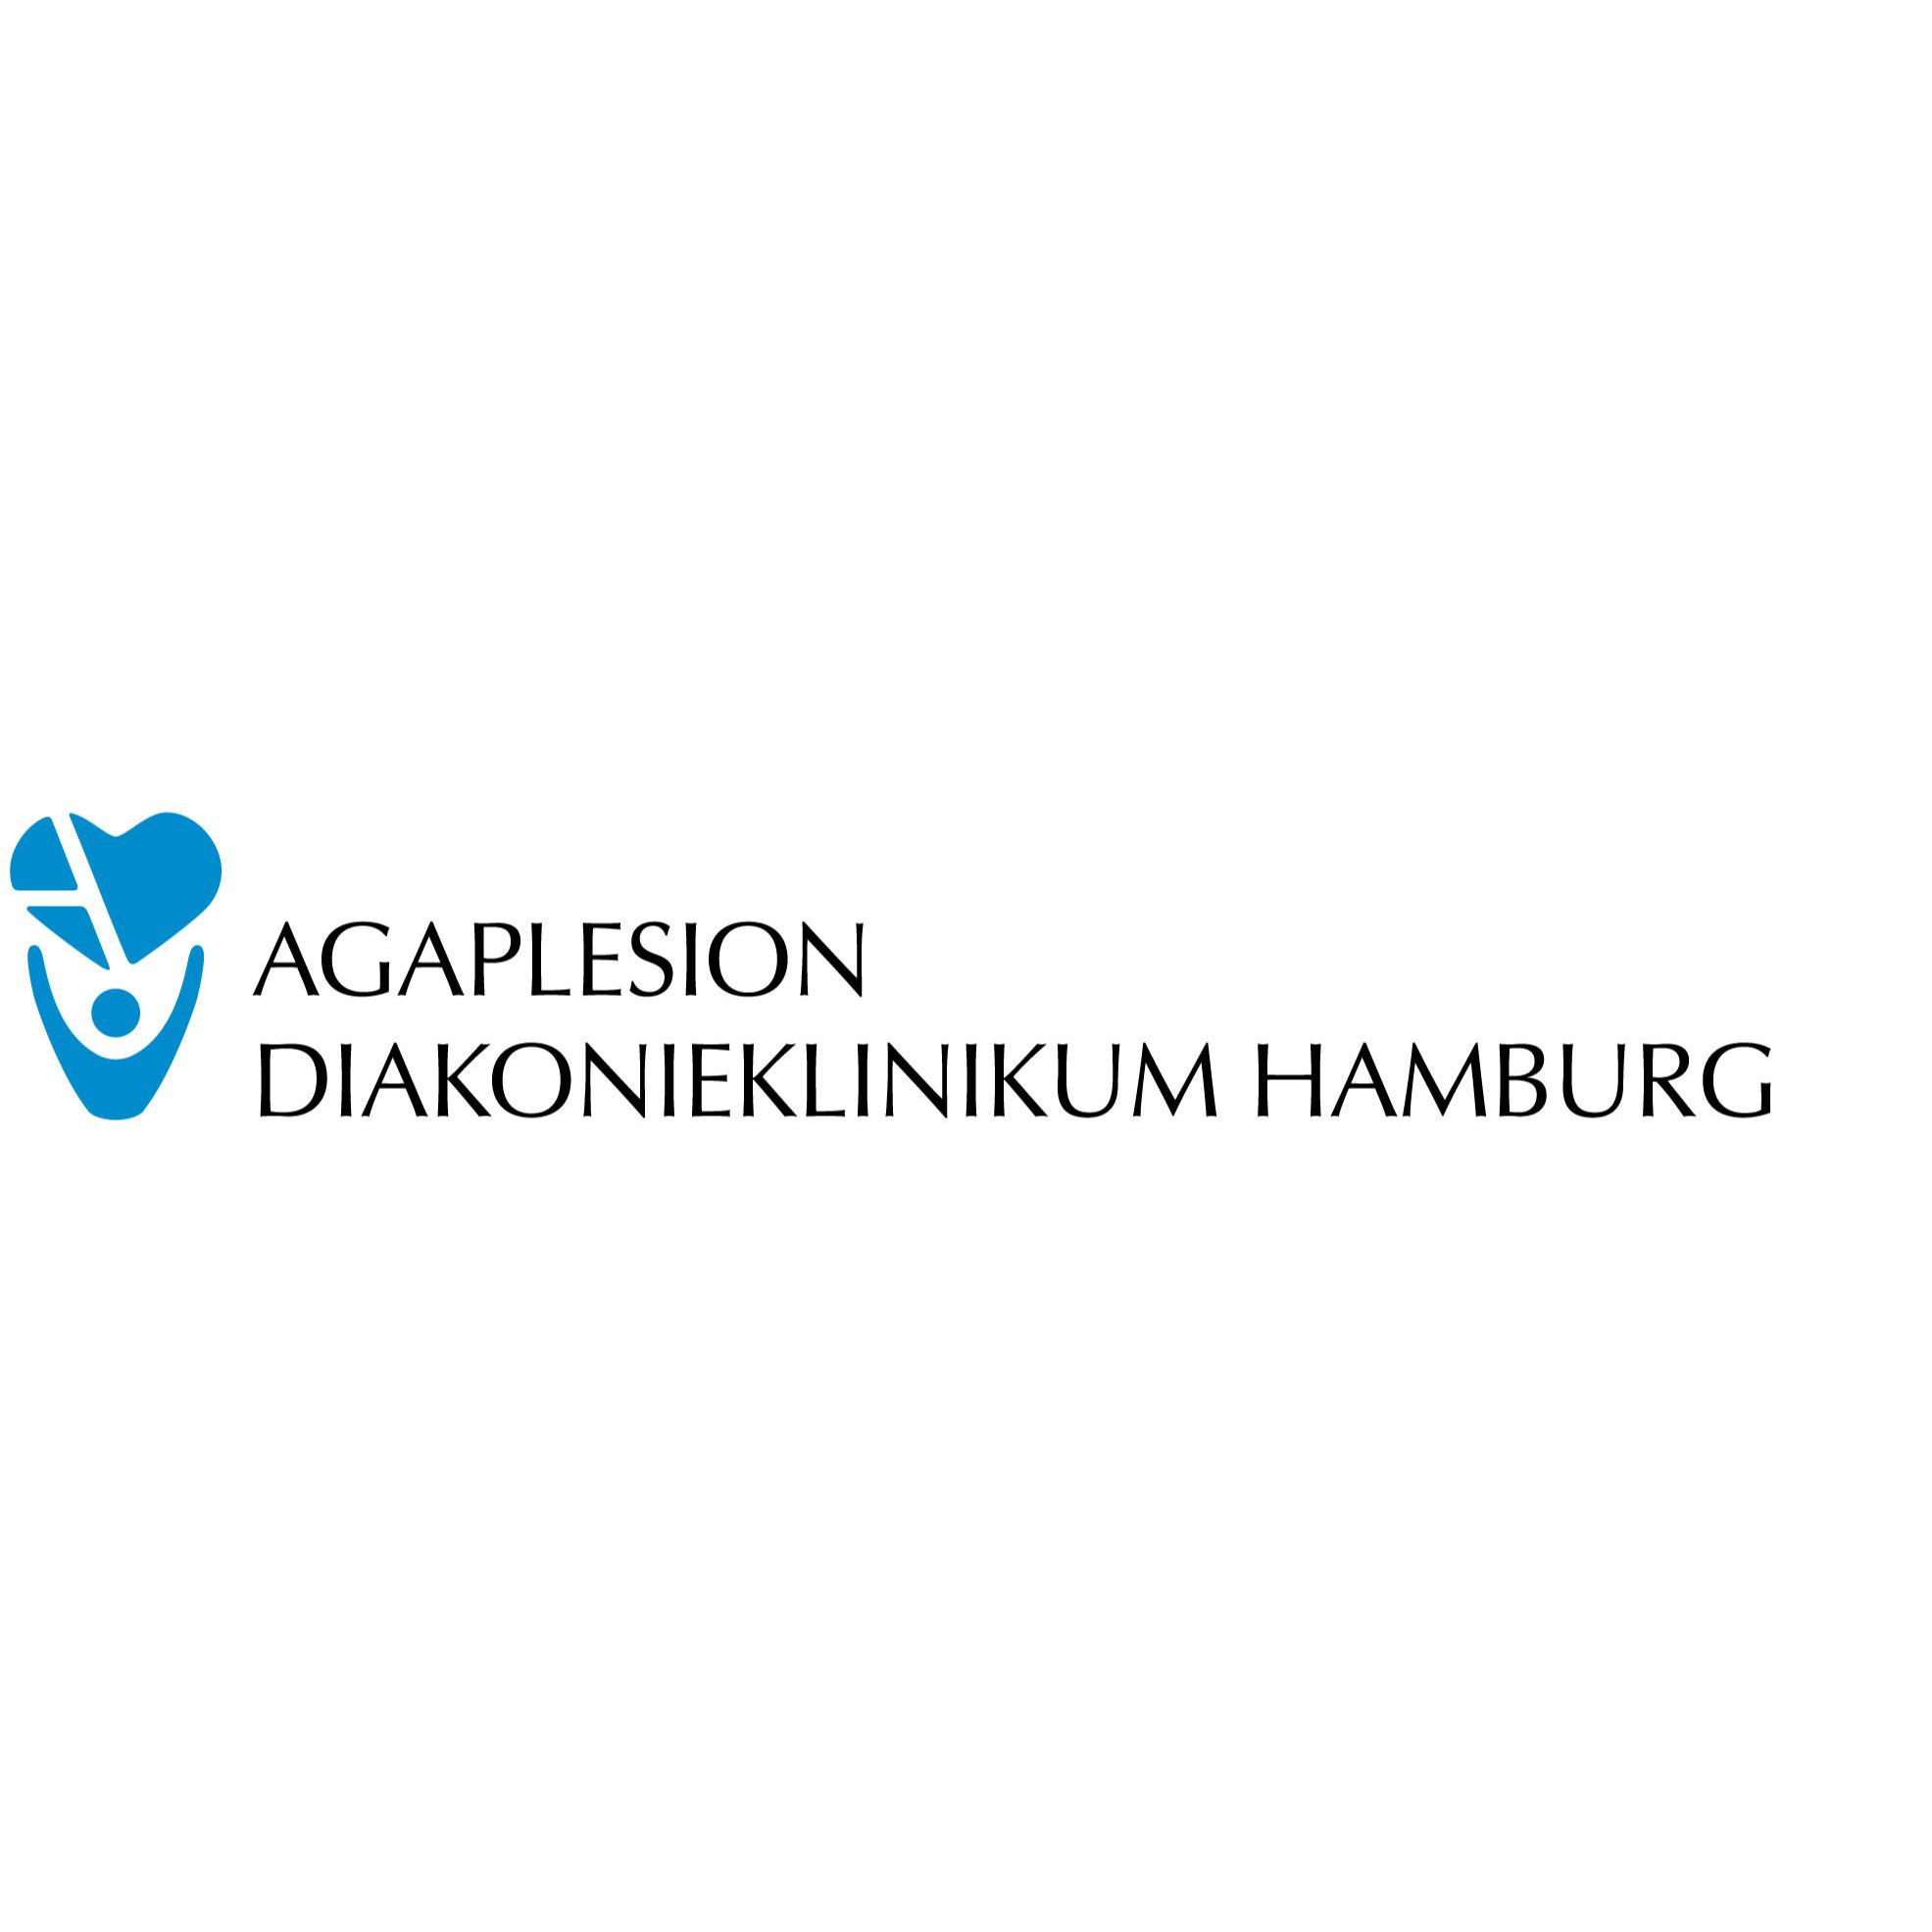 Klinik für Diabetologie am AGAPLESION DIAKONIEKLINIKUM HAMBURG in Hamburg - Logo